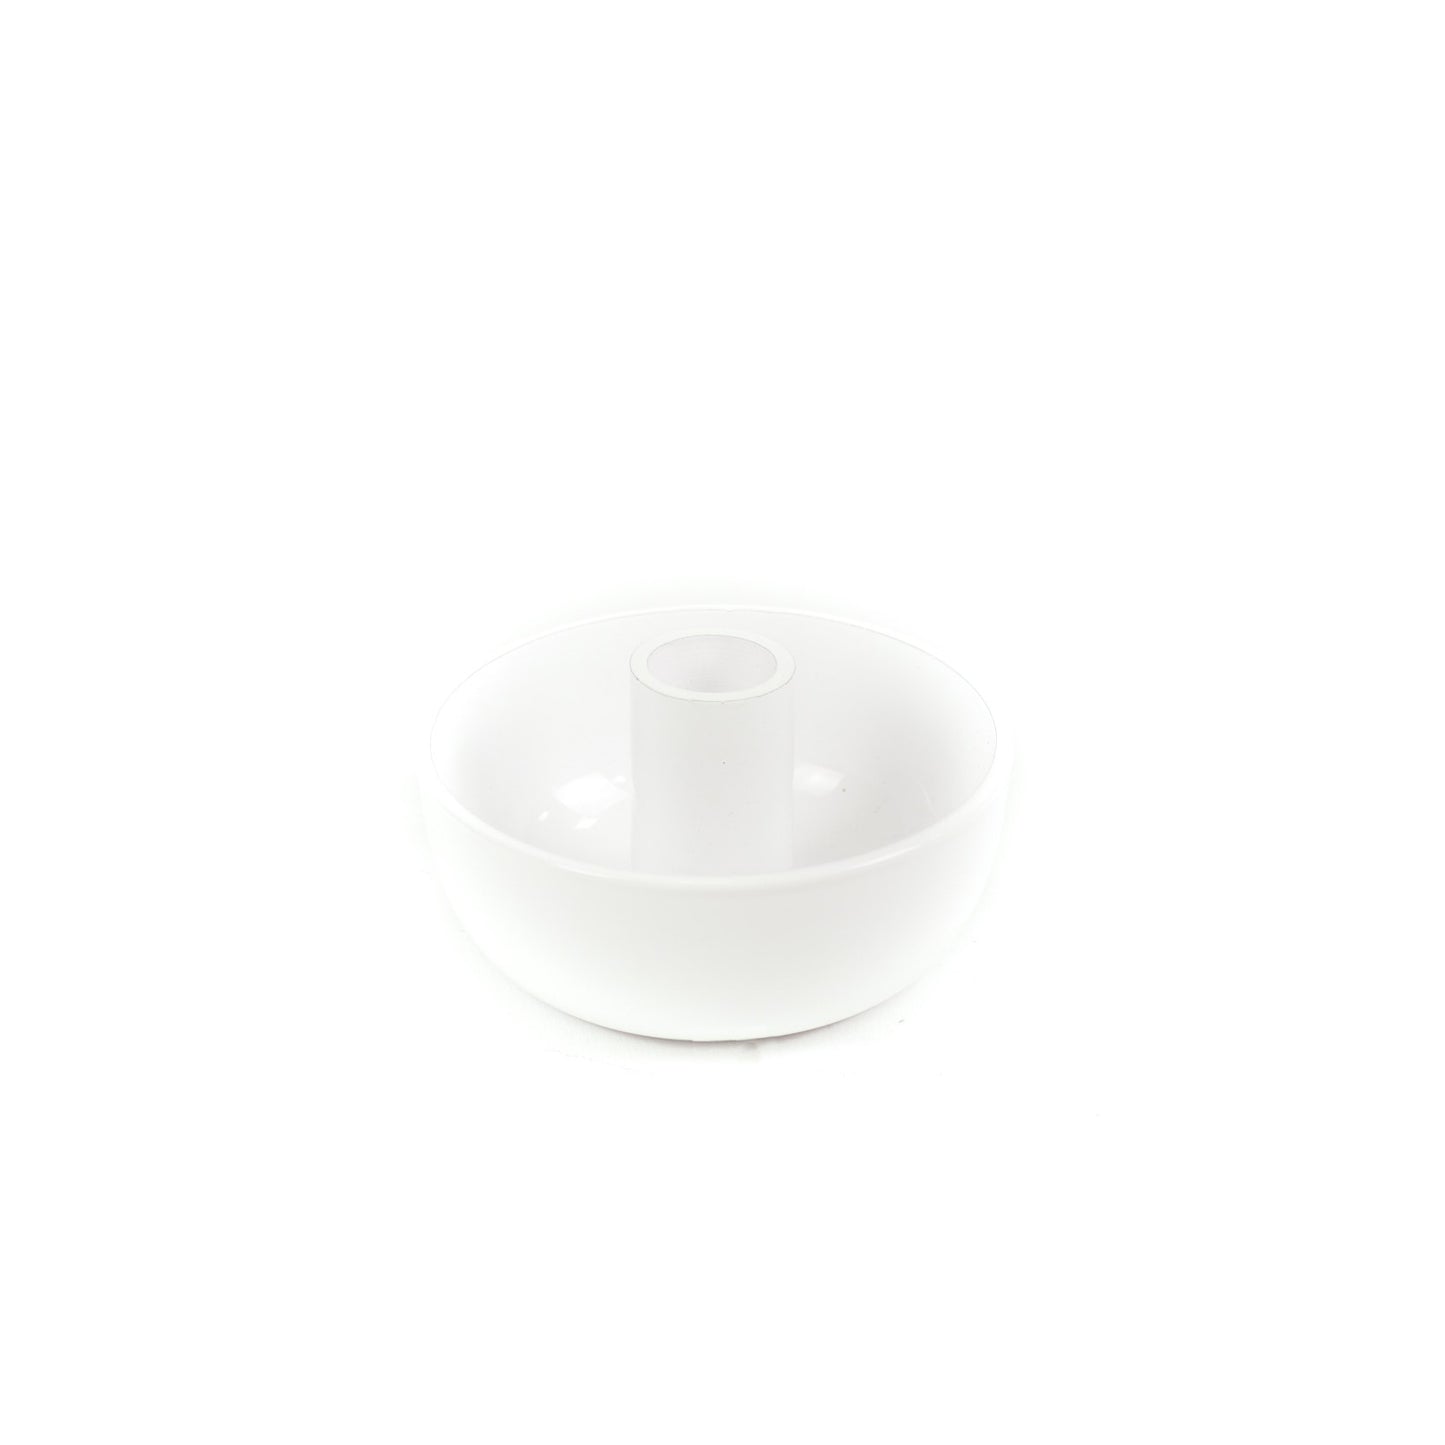 HV Candleholder White - 10x10x6cm